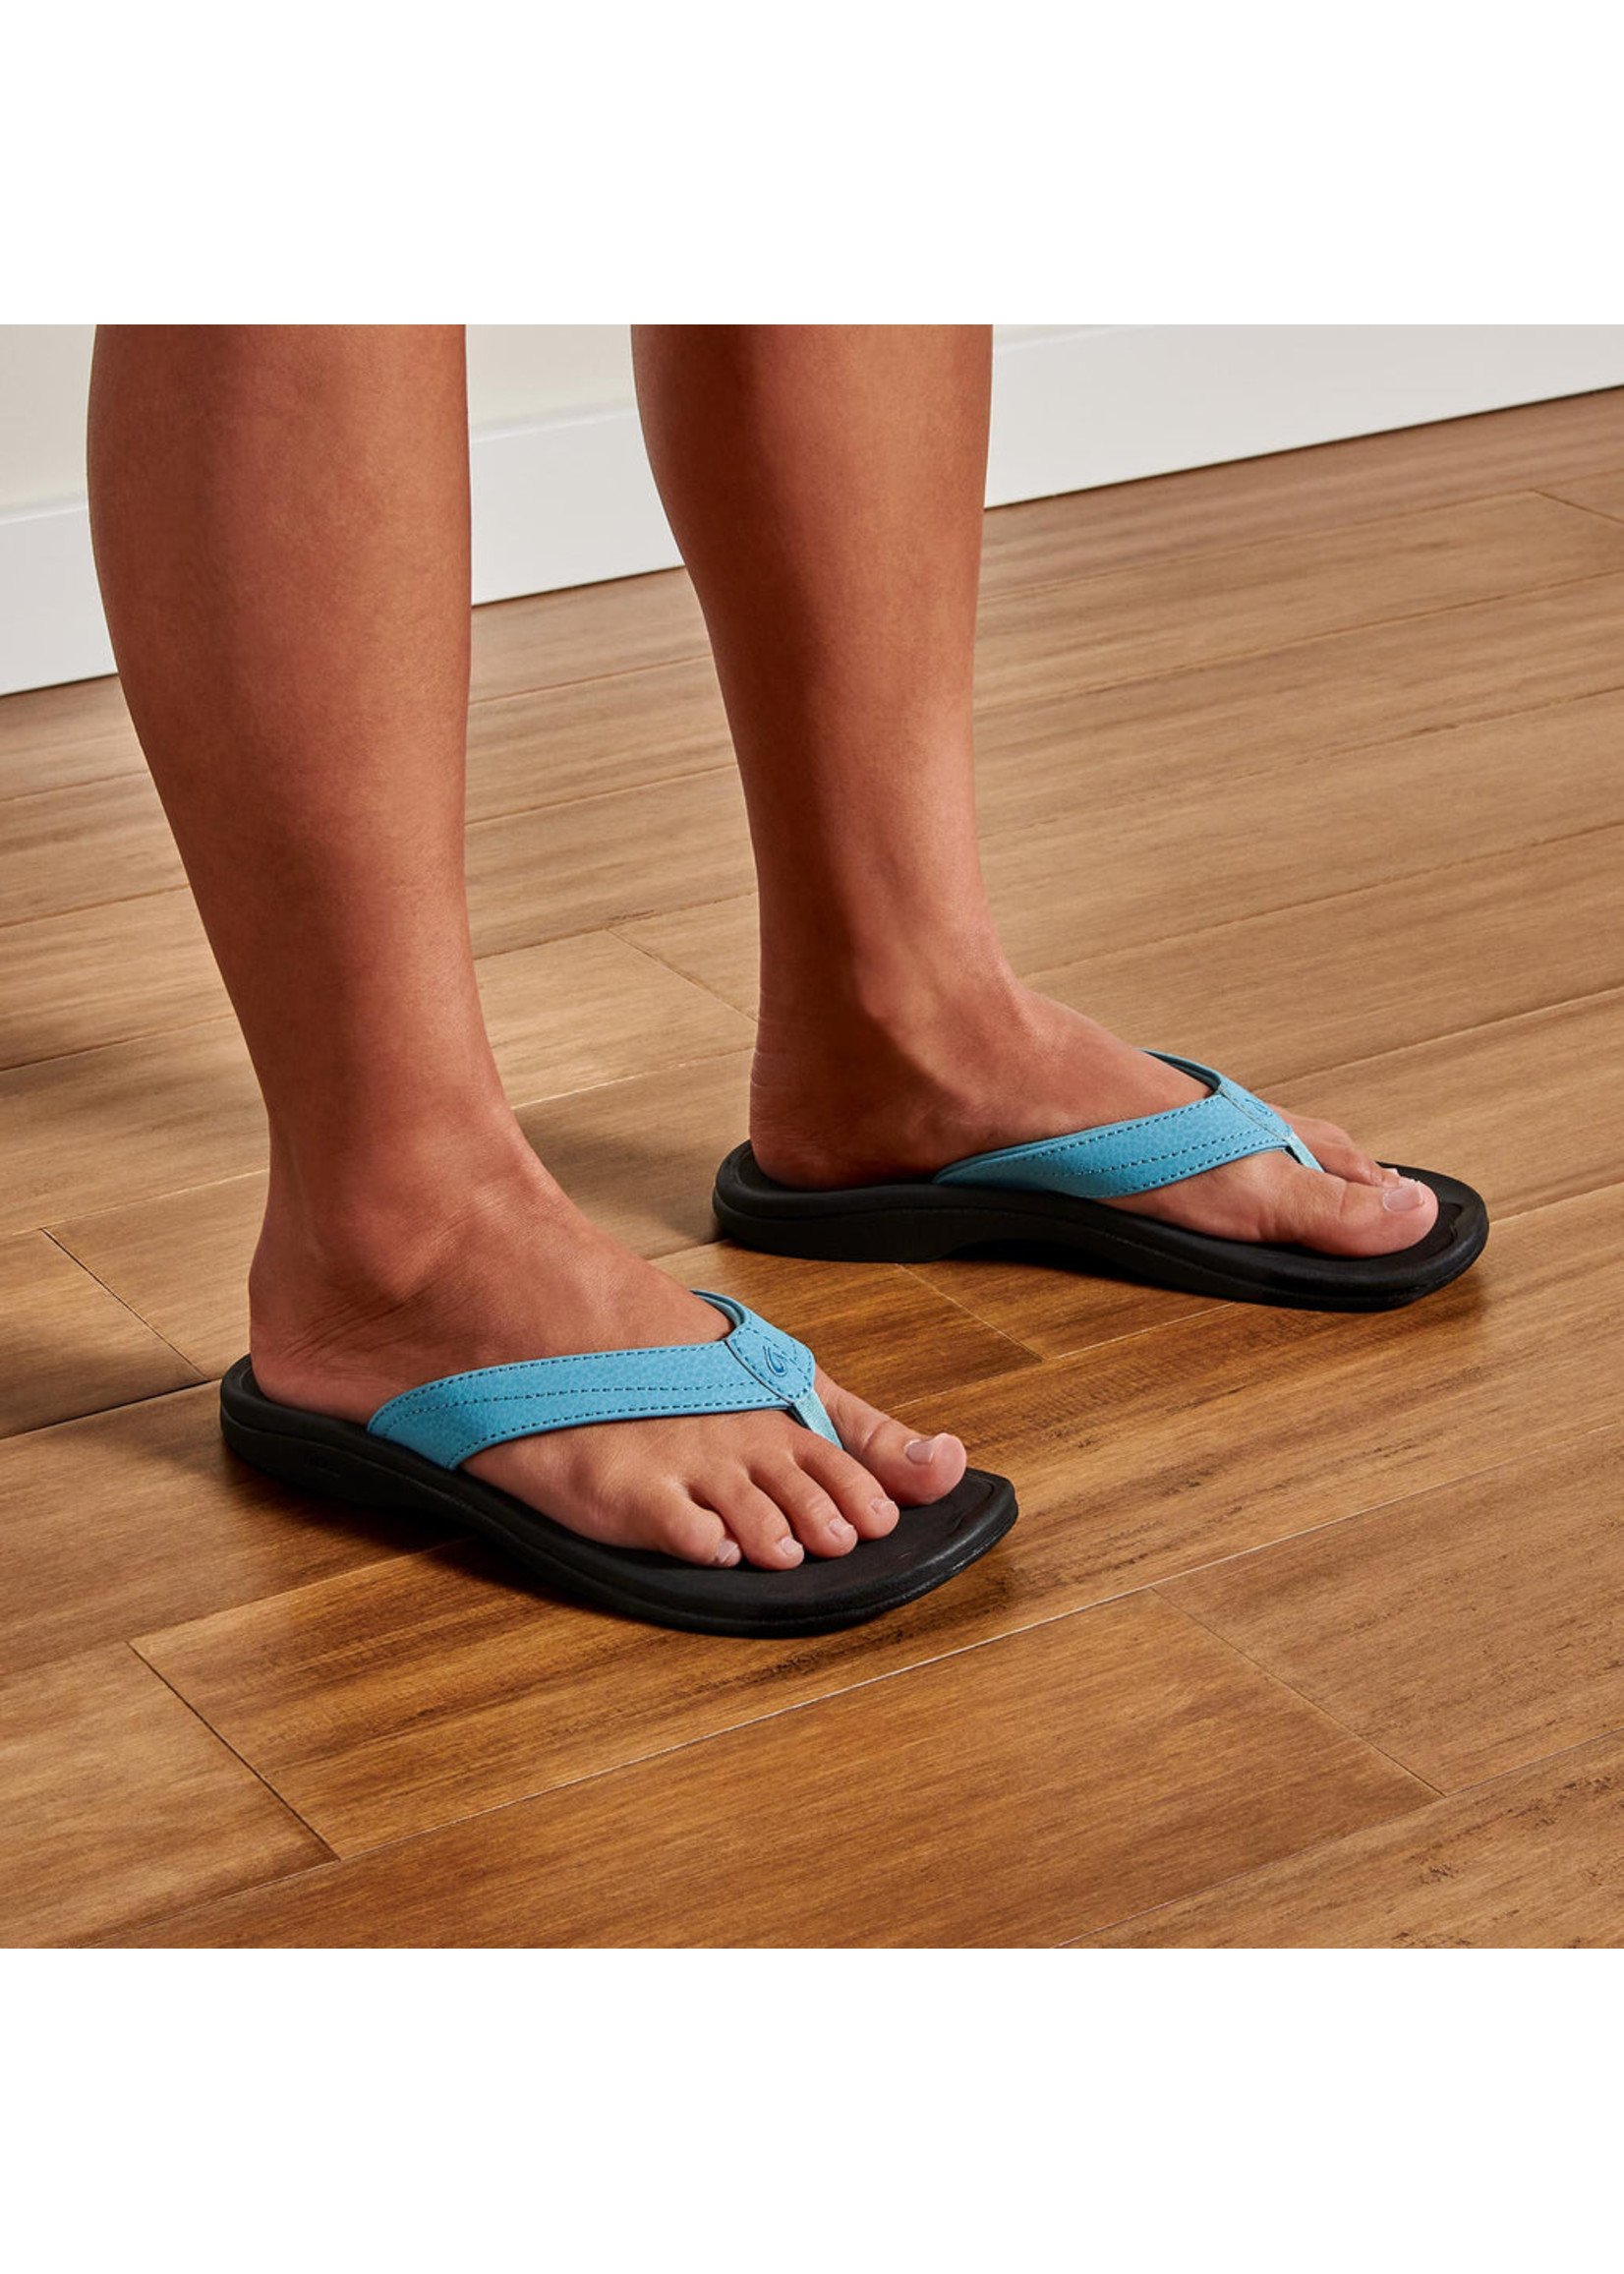 OluKai ‘Ohana  Women's Beach Sandals